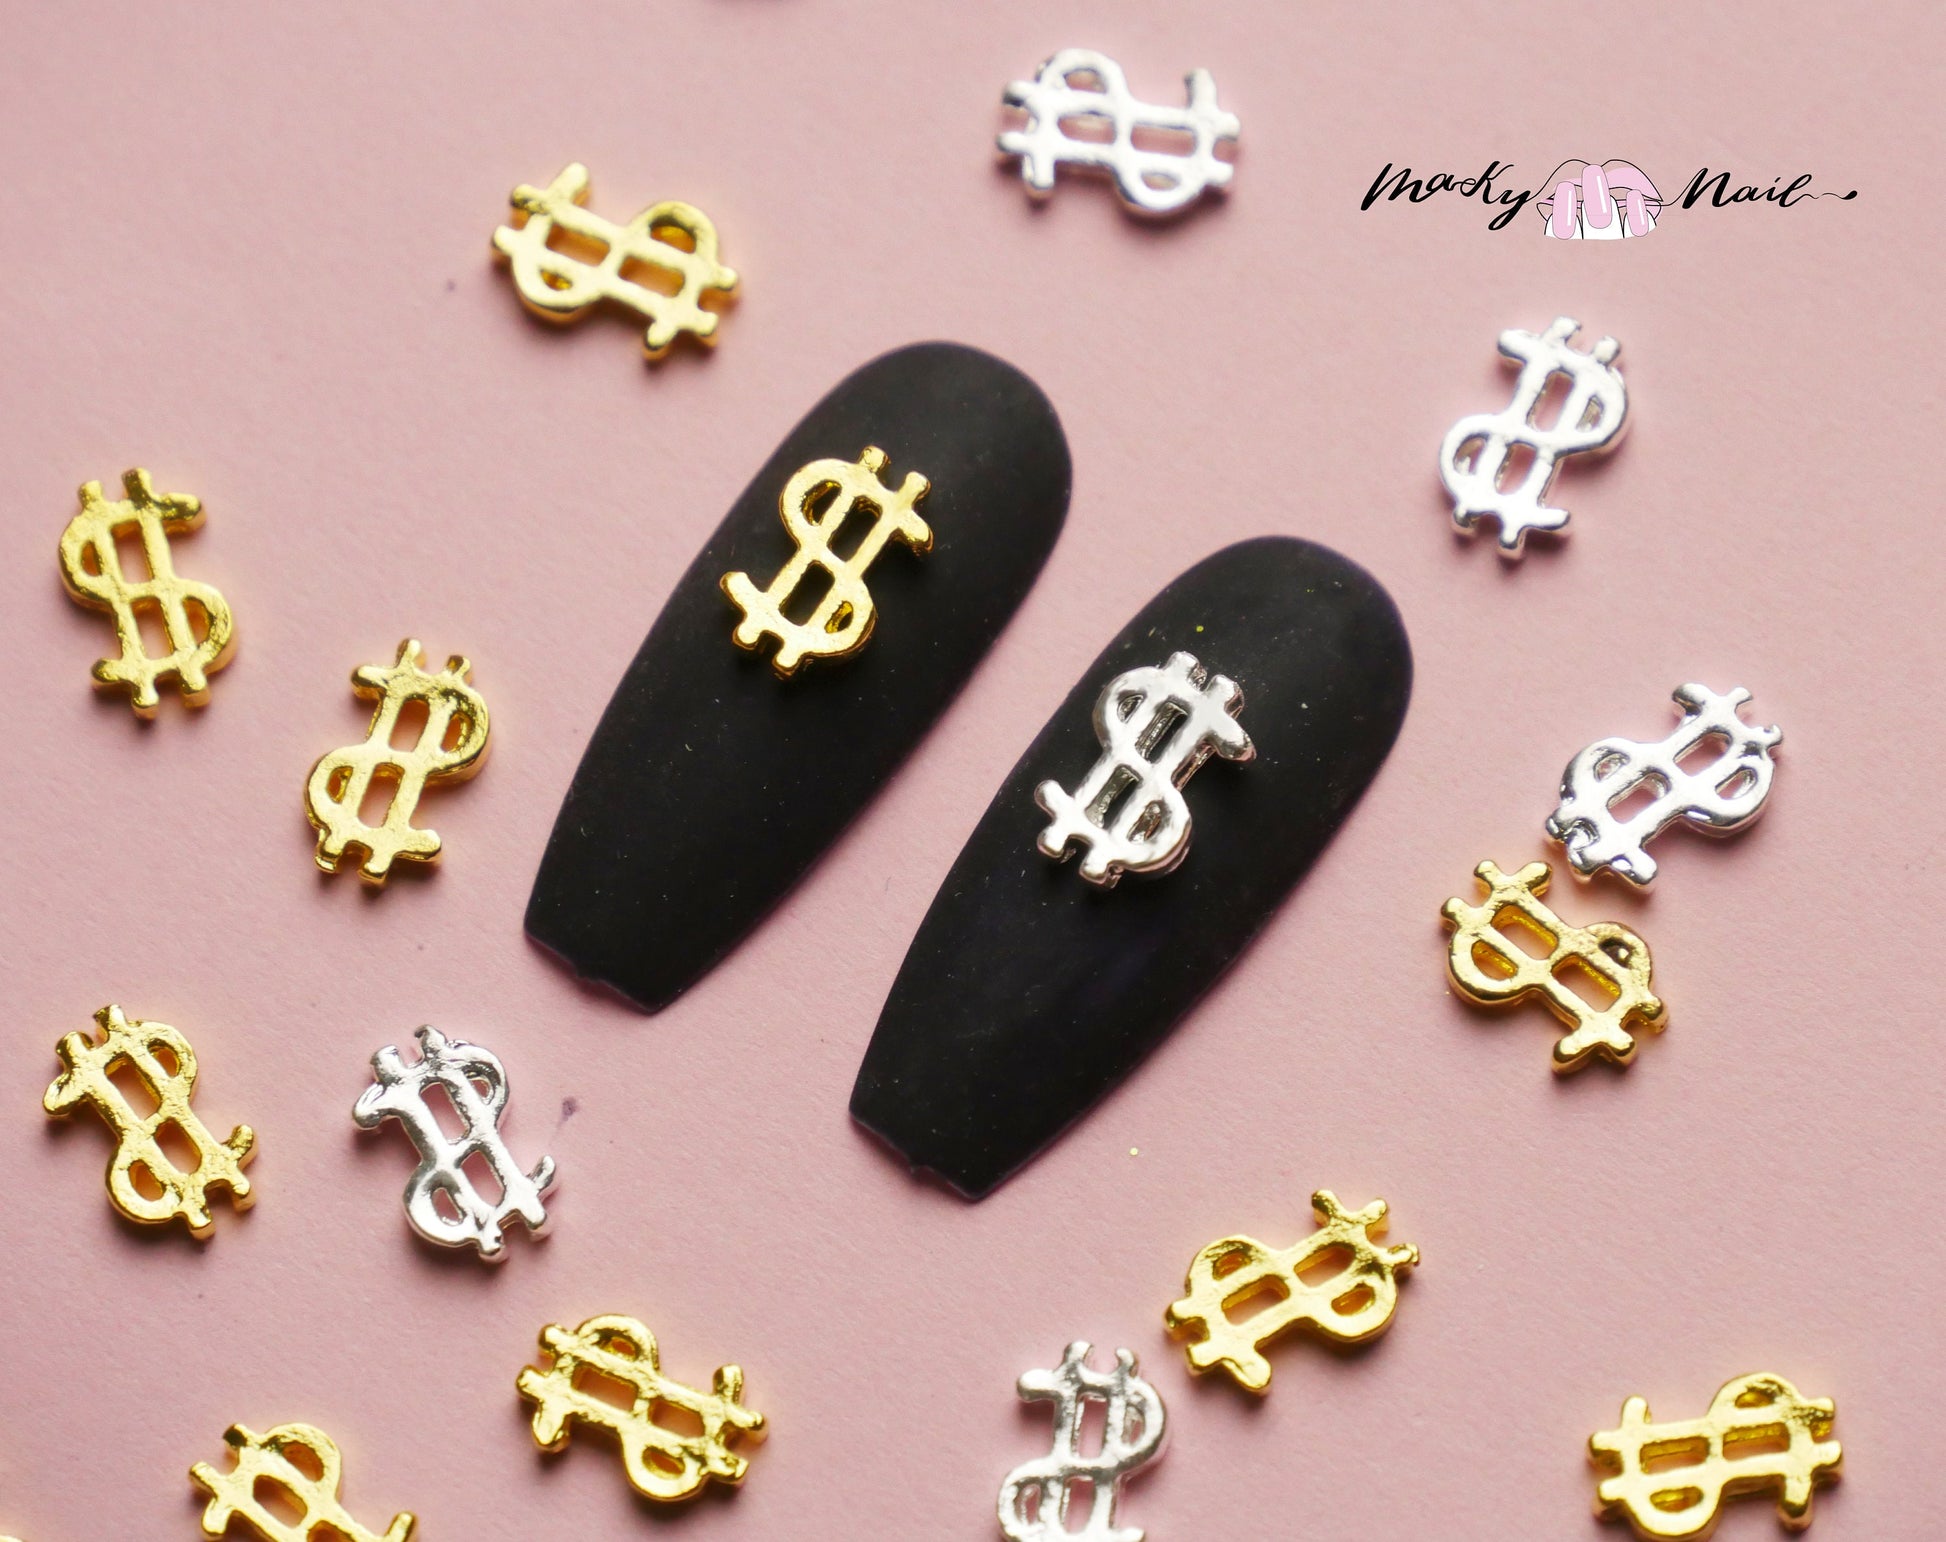 5 pcs 3D Money Sign nail decoration/ Dollar Sign DIY nail deco charm for nail art